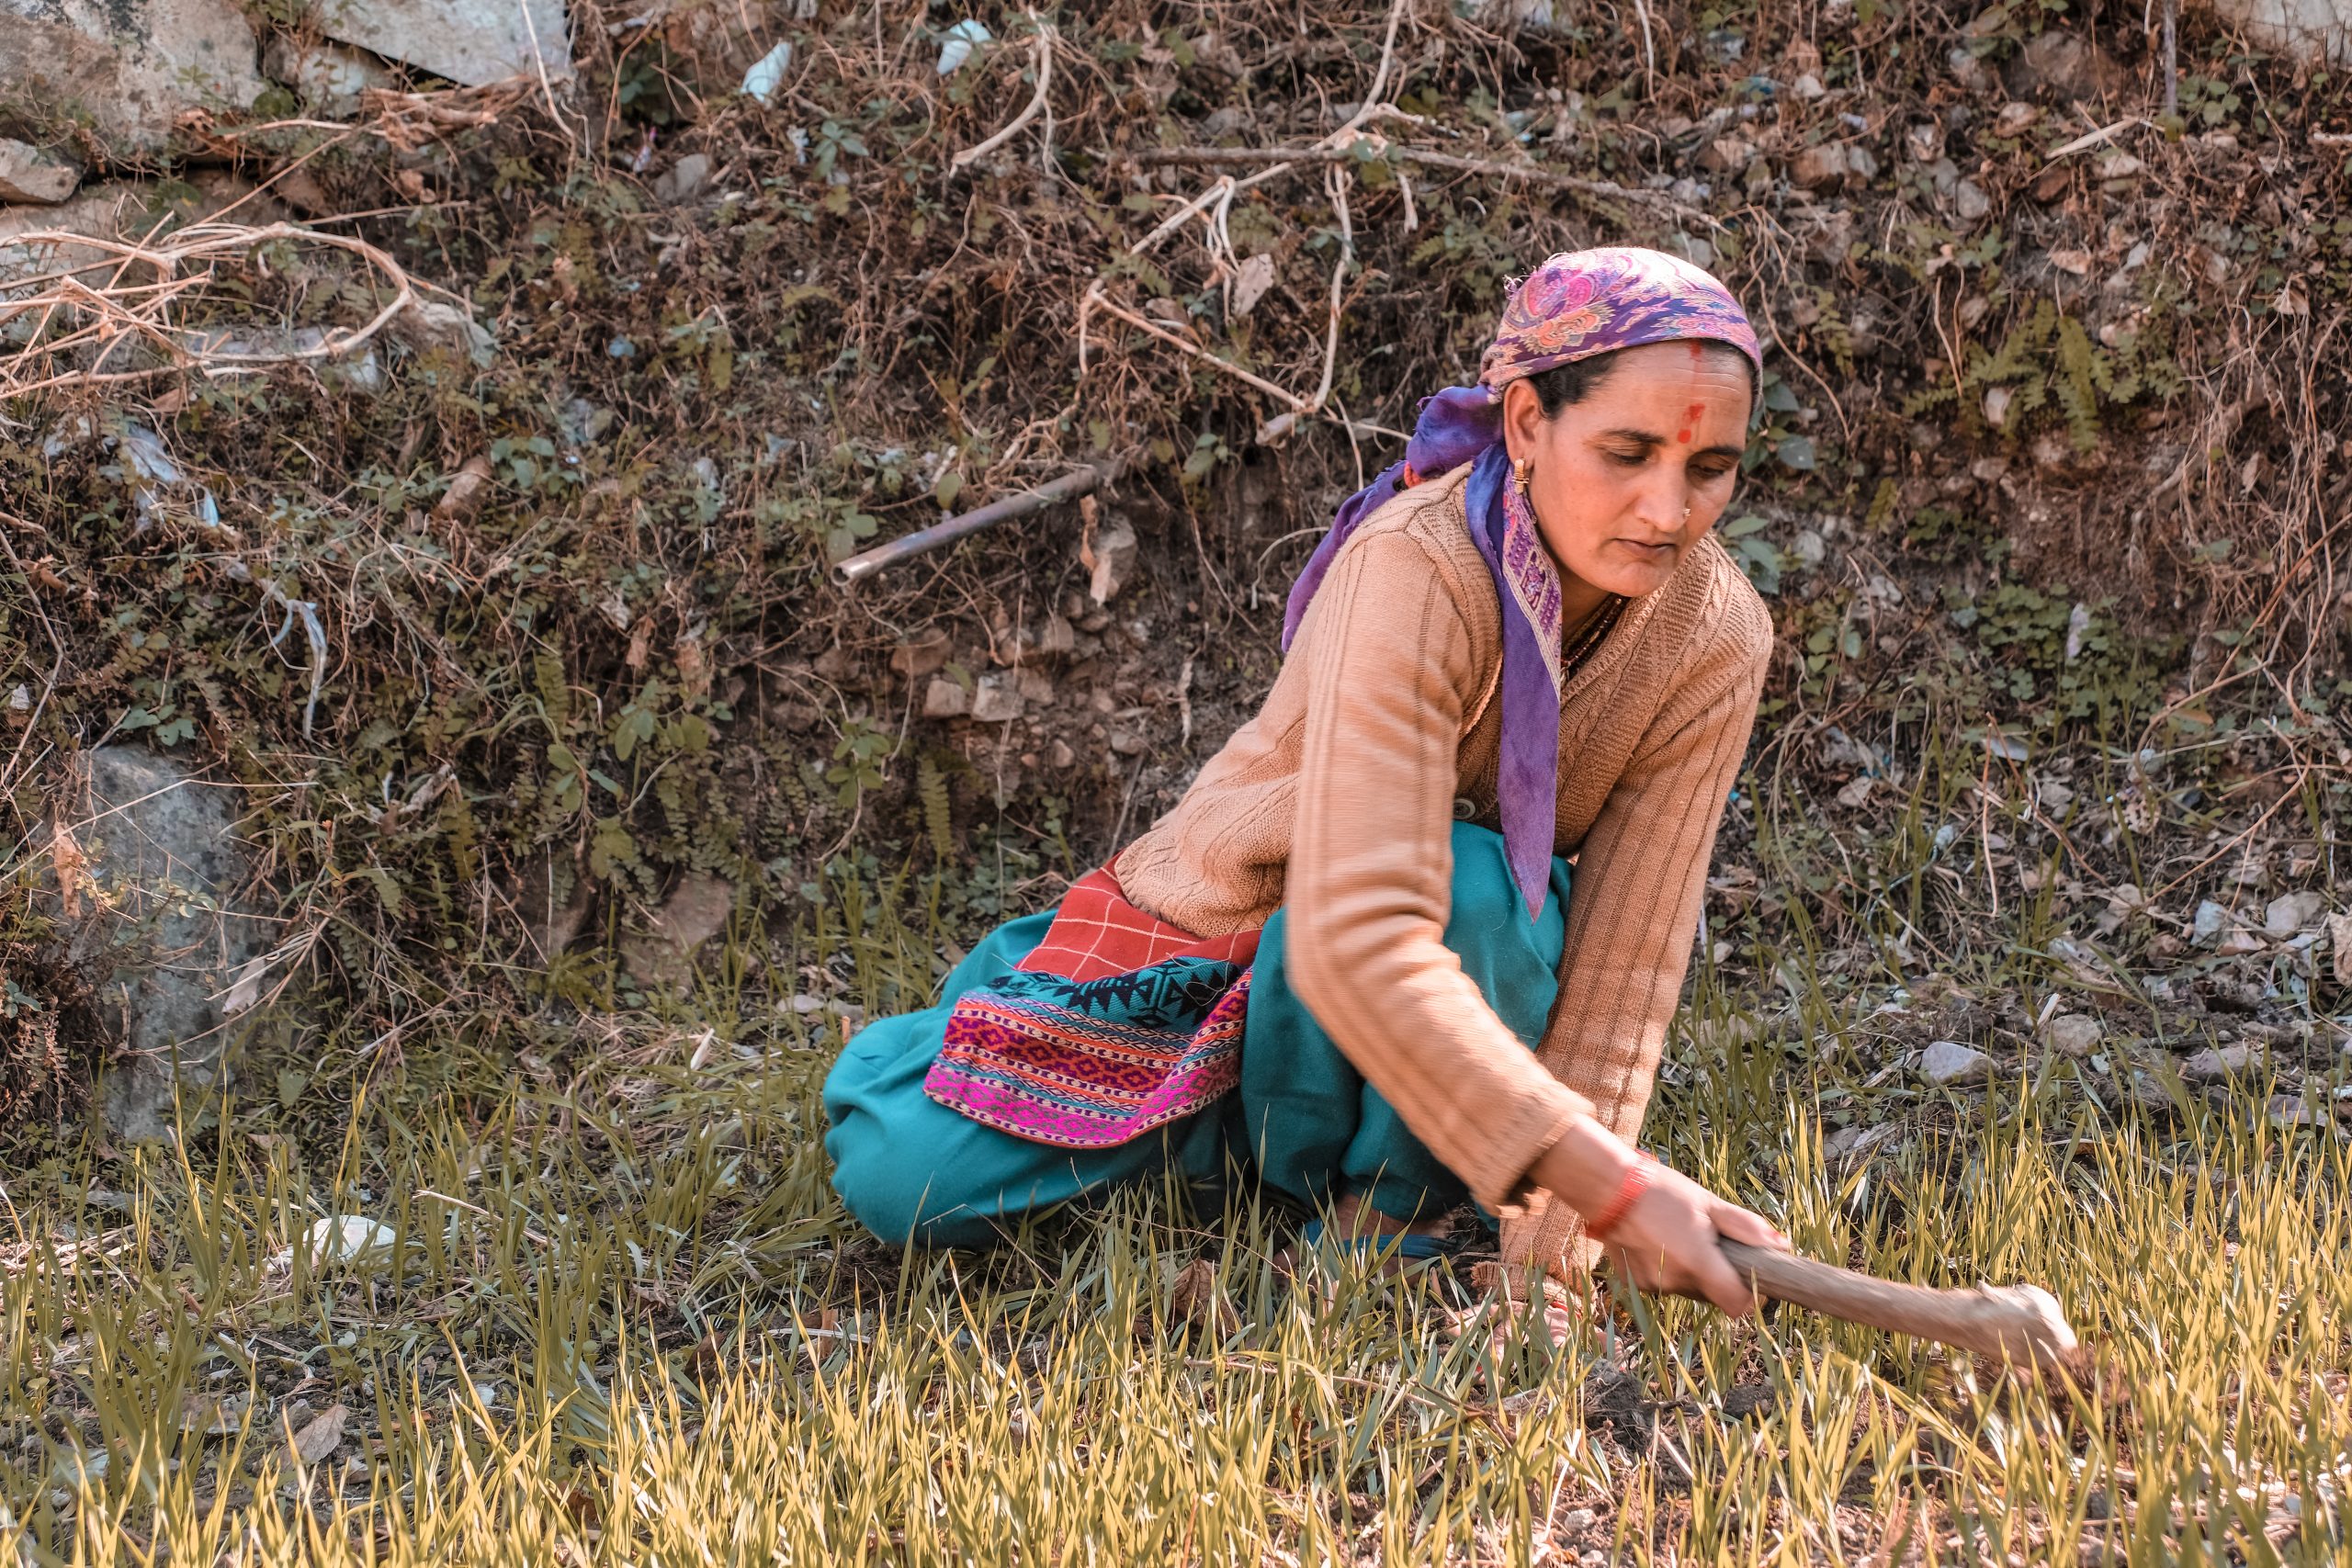 A lady farmer working in field